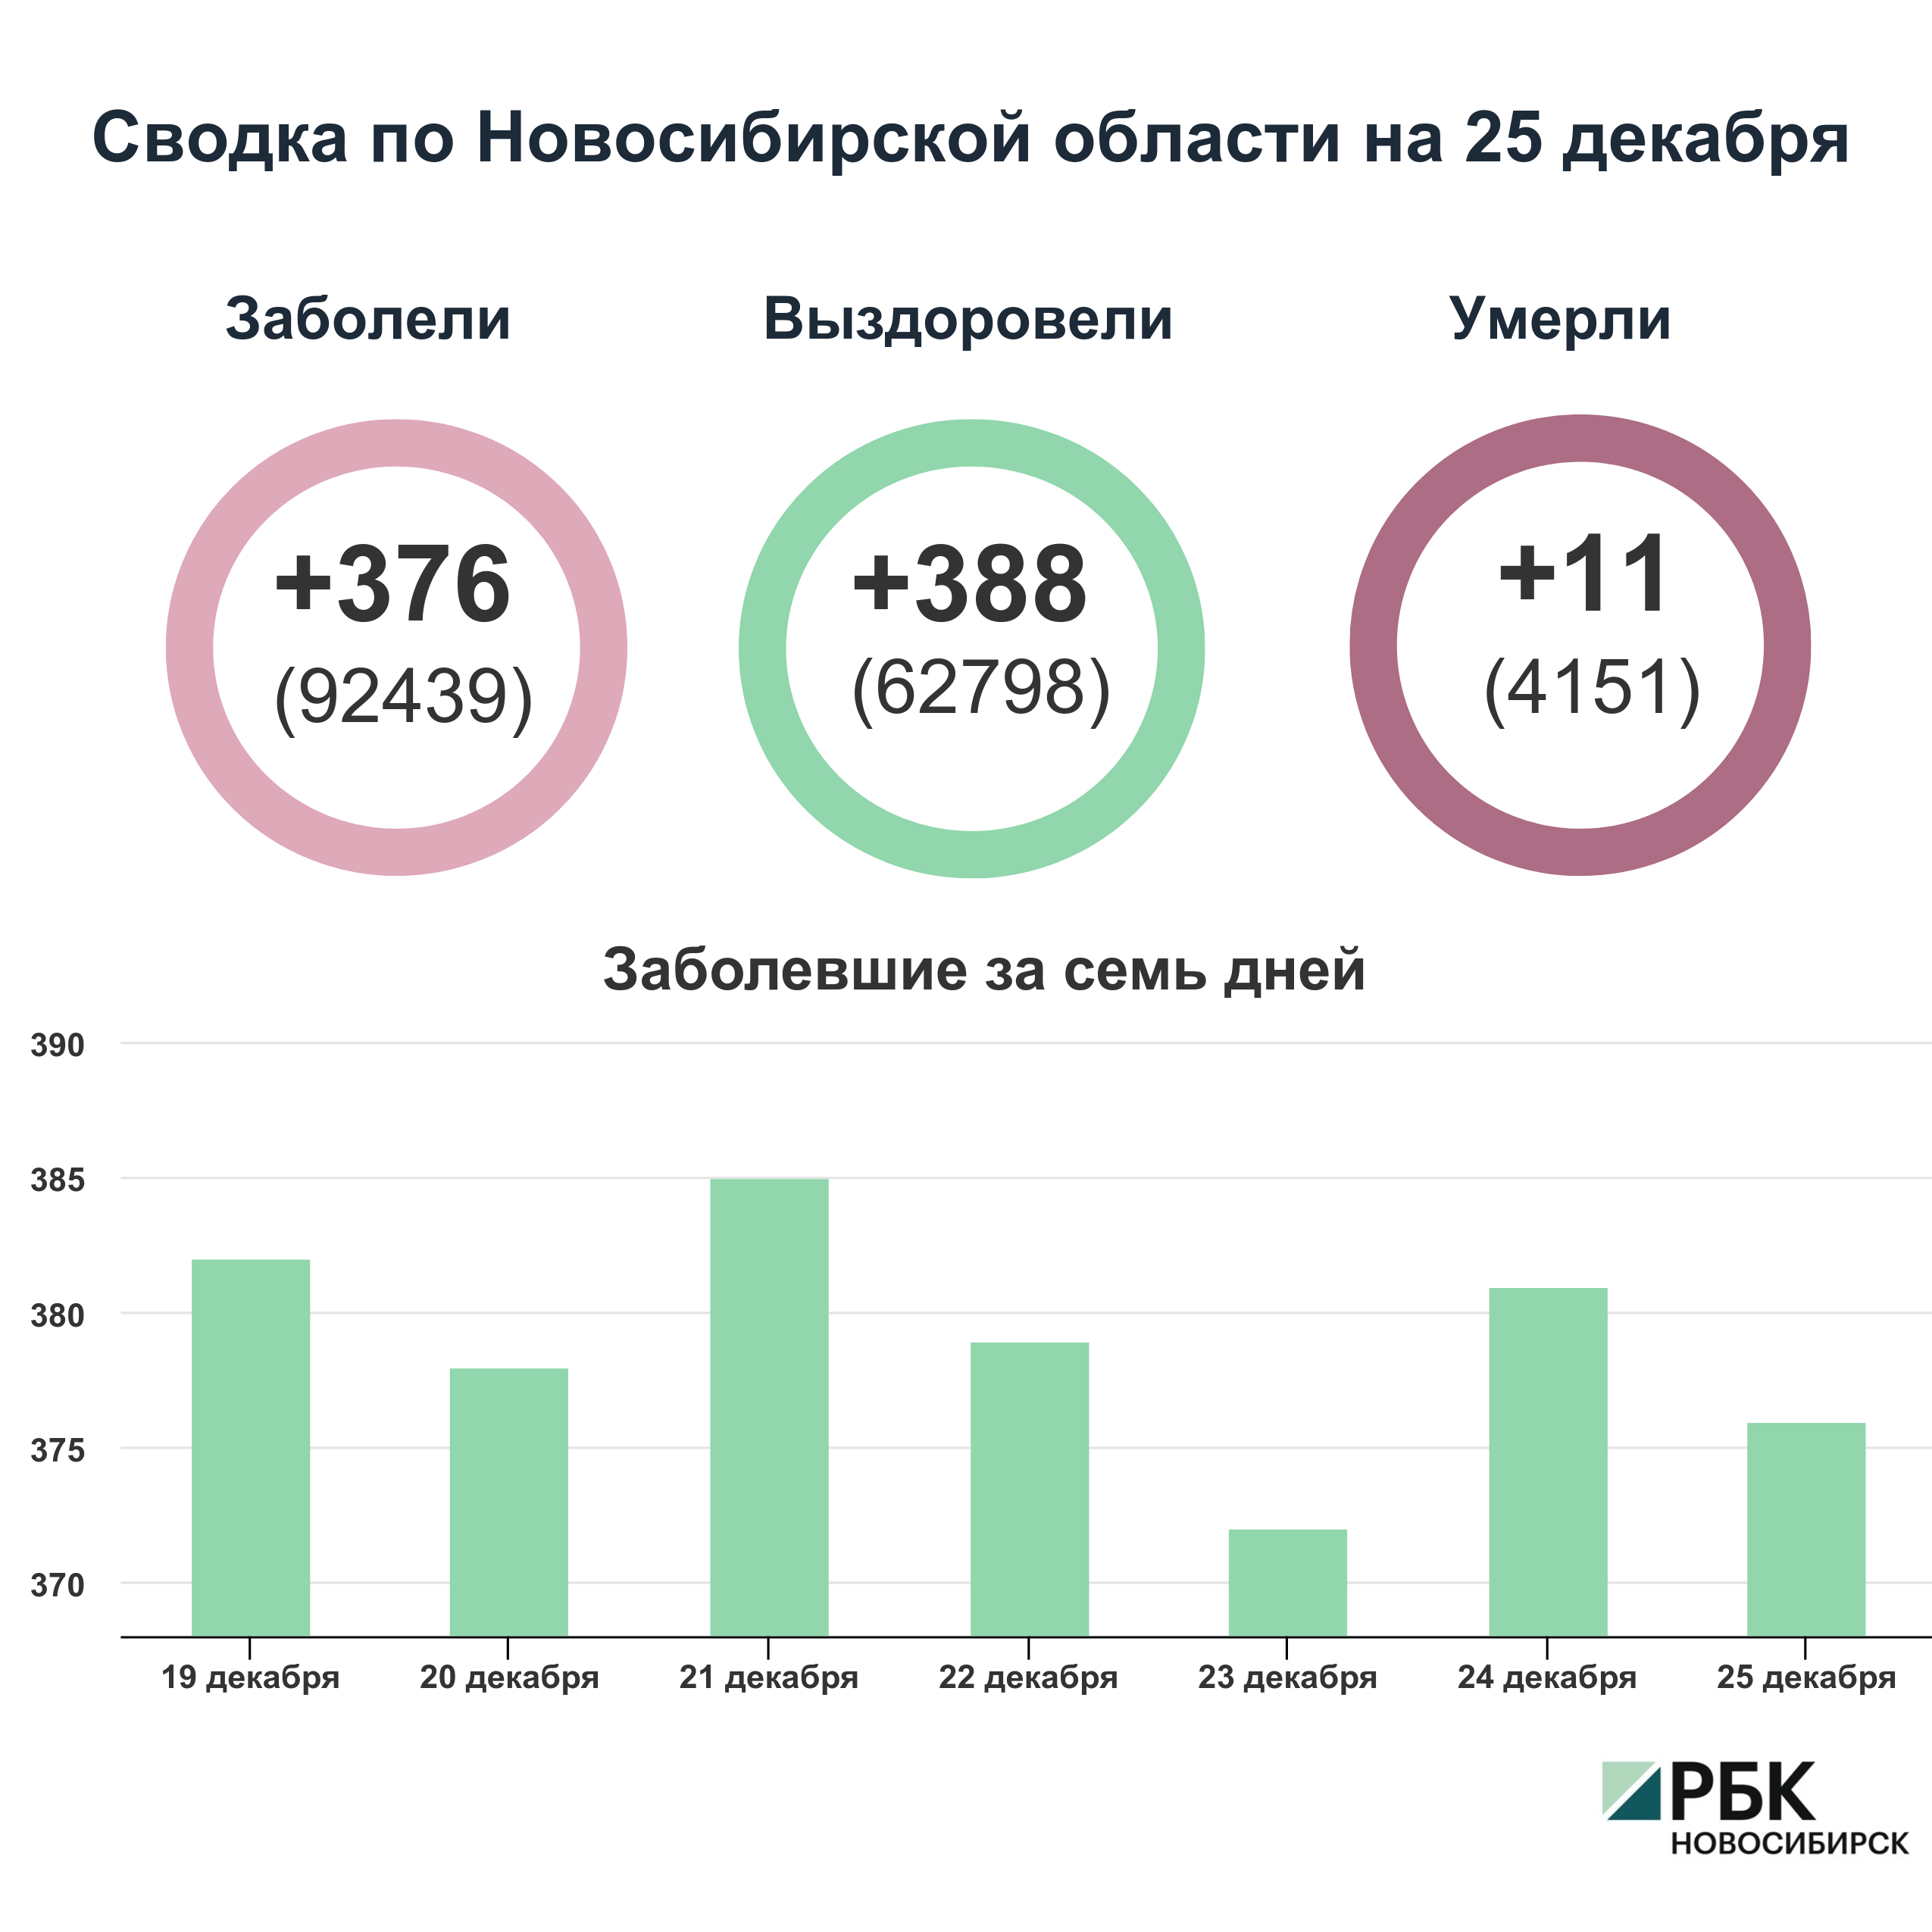 Коронавирус в Новосибирске: сводка на 25 декабря